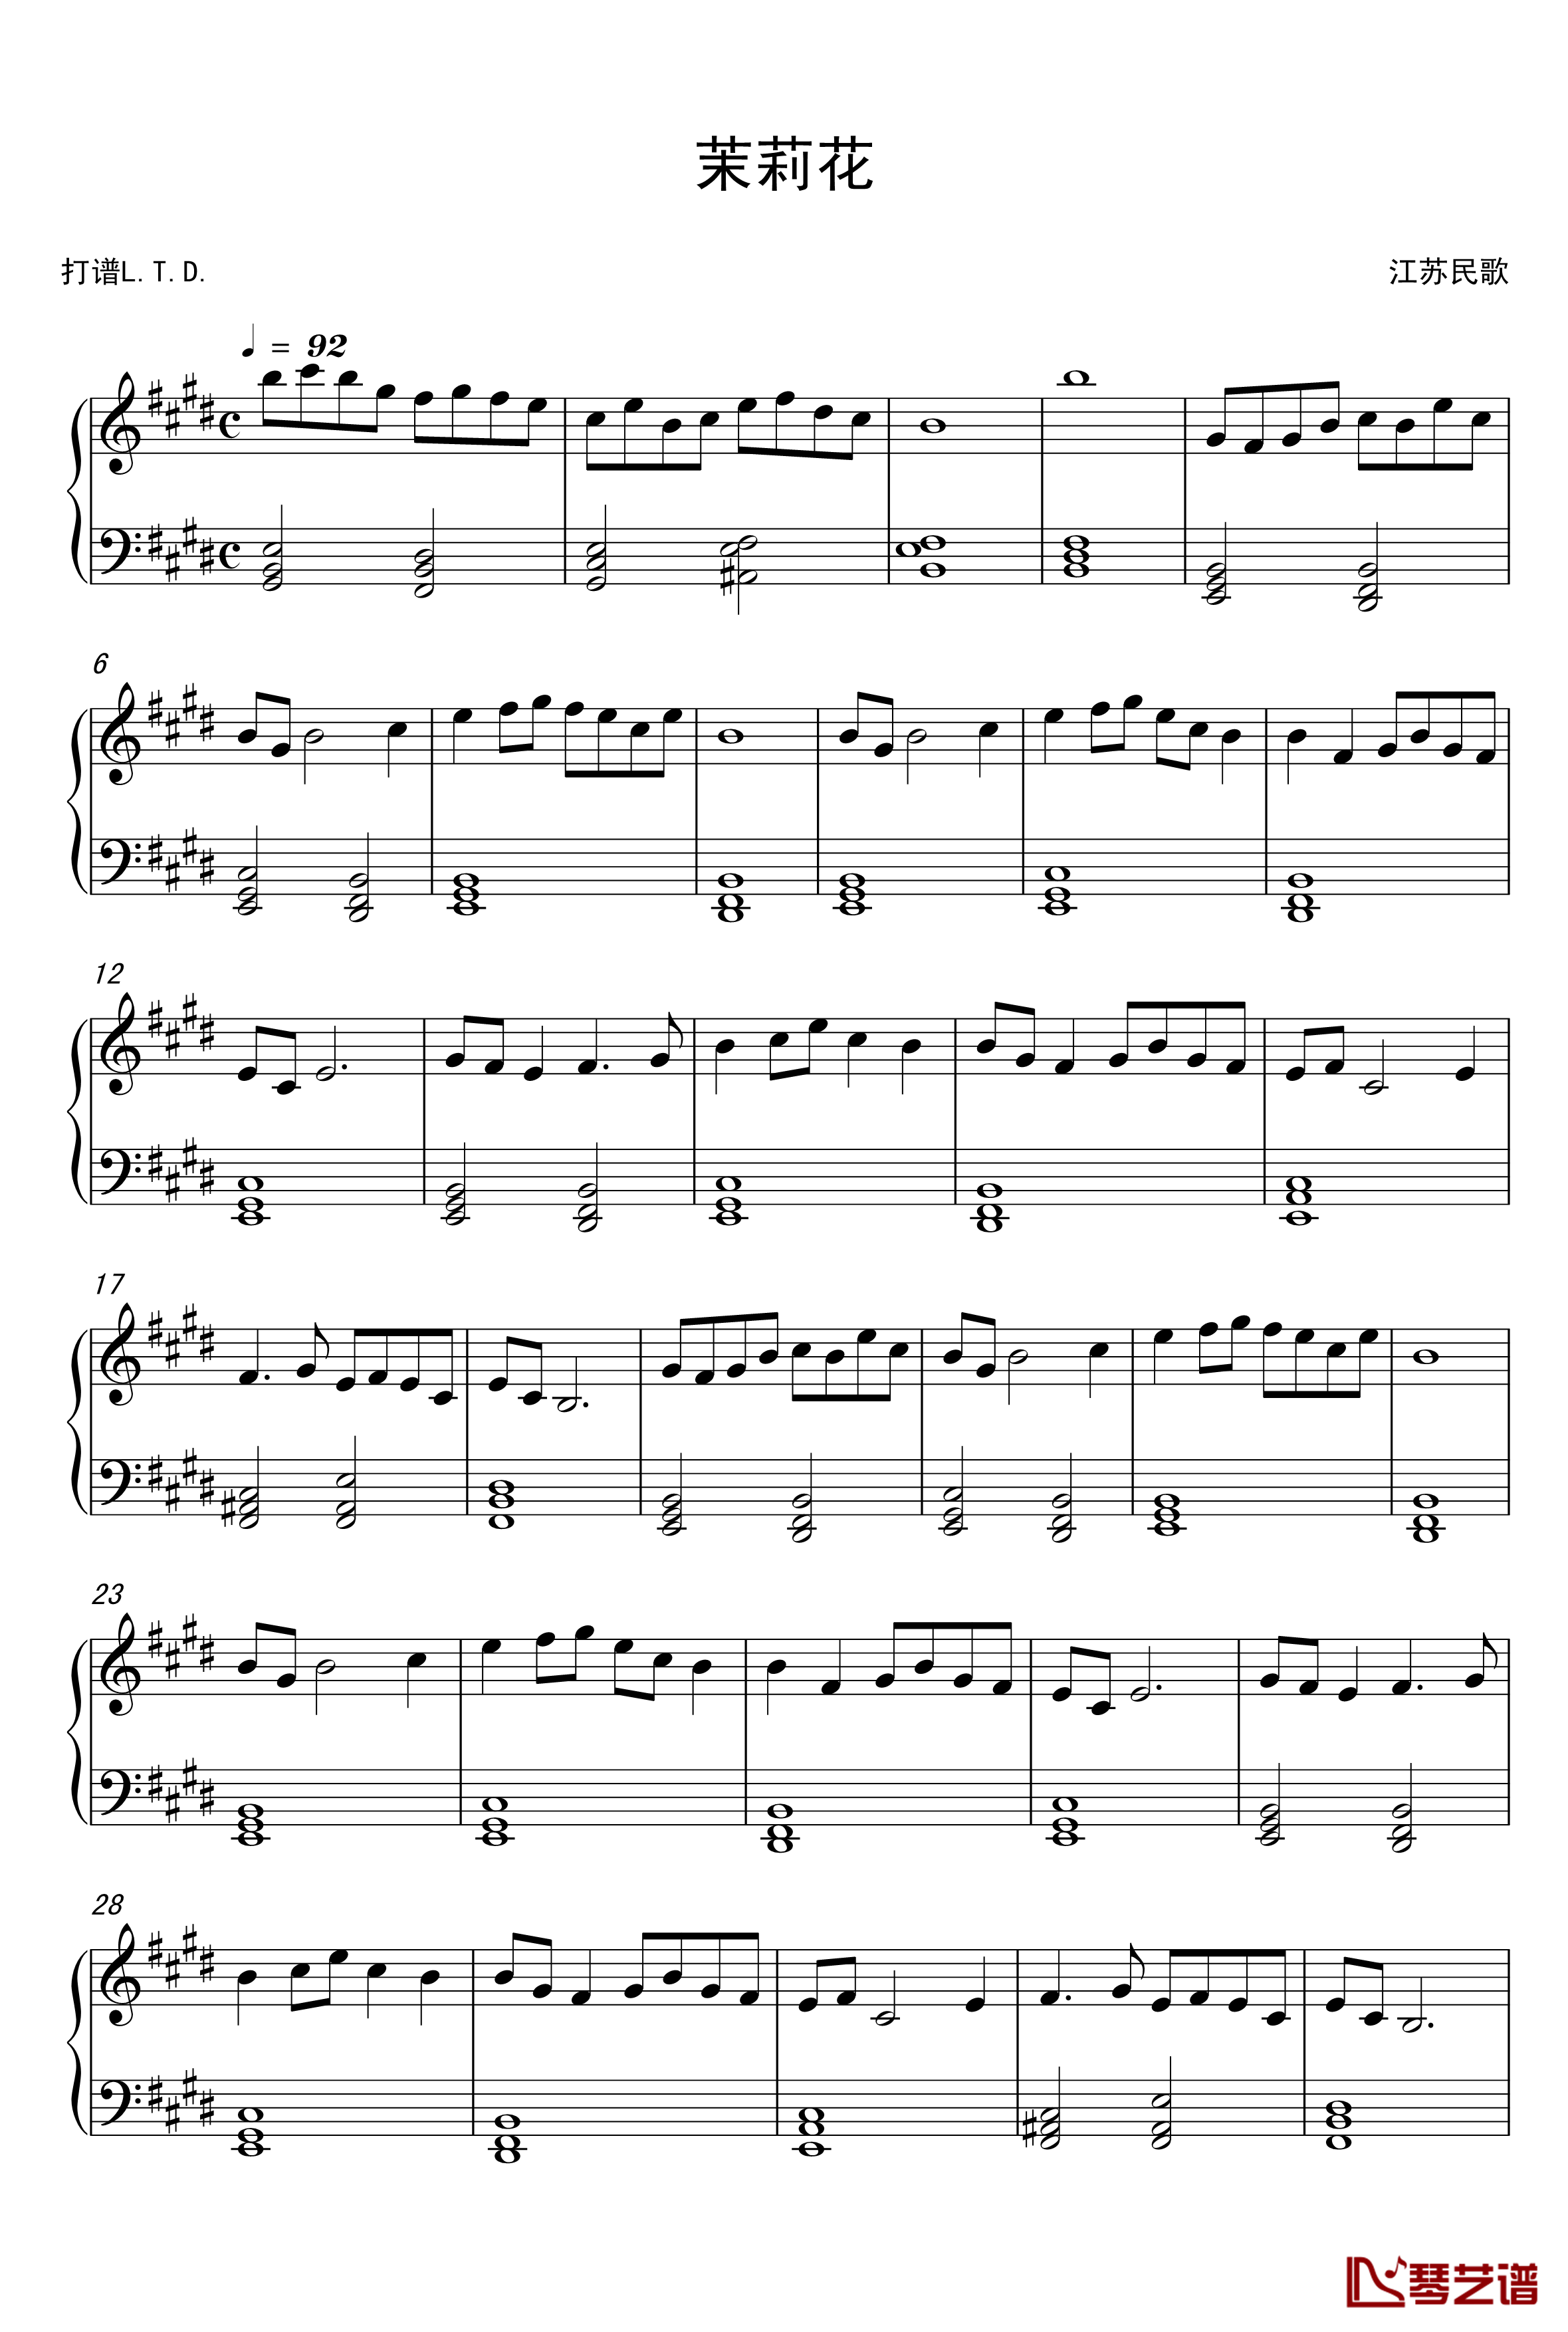 茉莉花钢琴谱-民歌版-中国名曲1